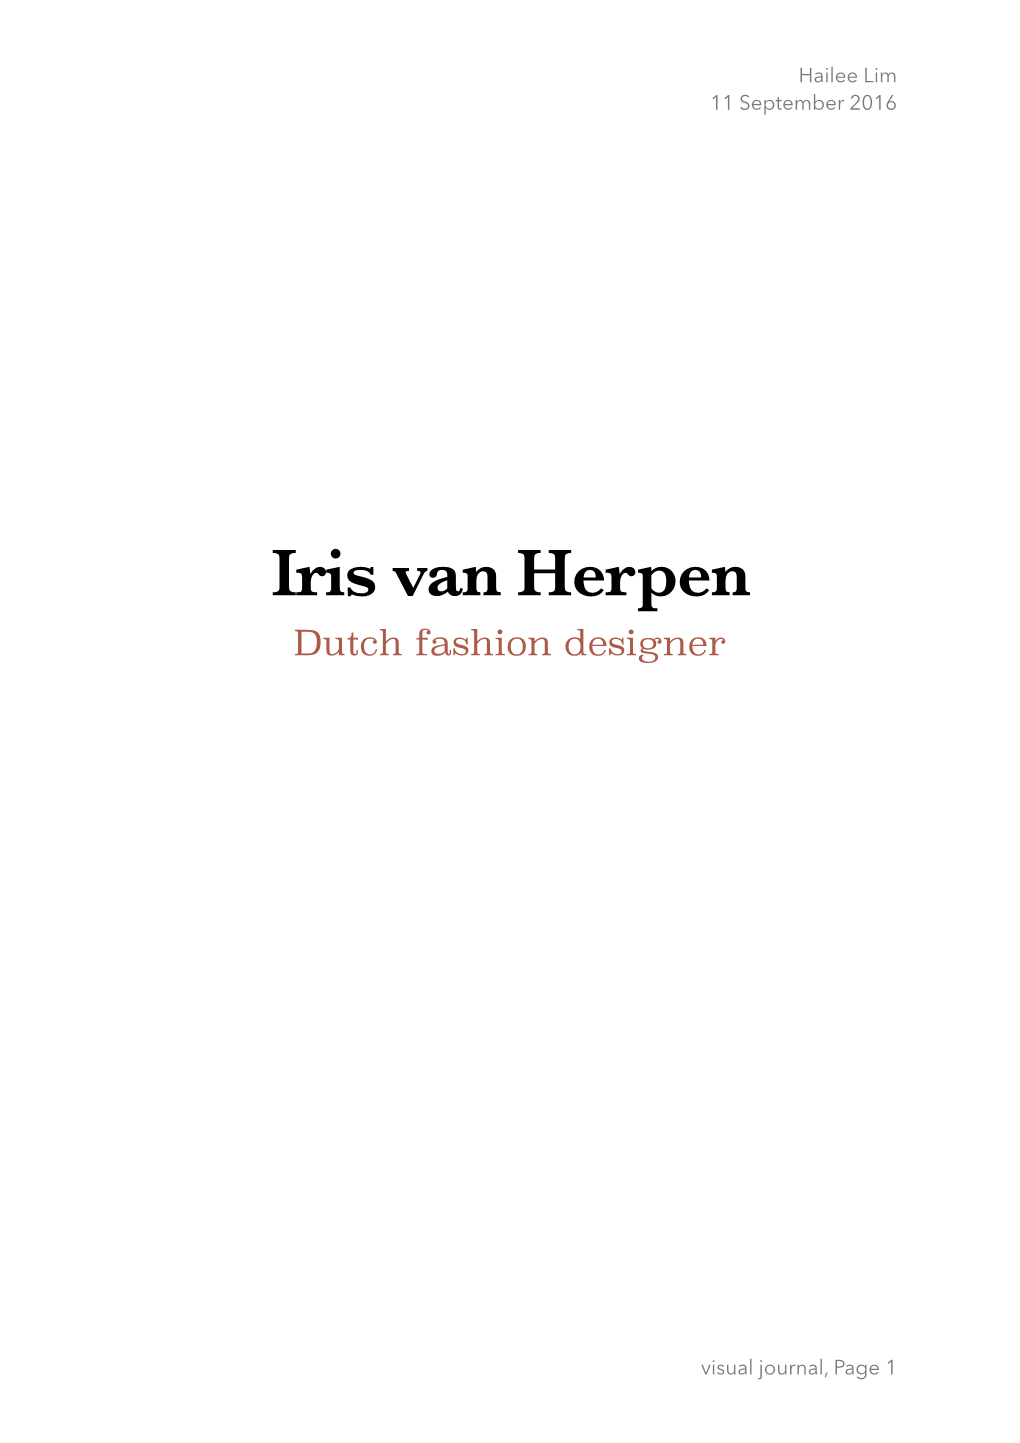 Iris Van Herpen Dutch Fashion Designer